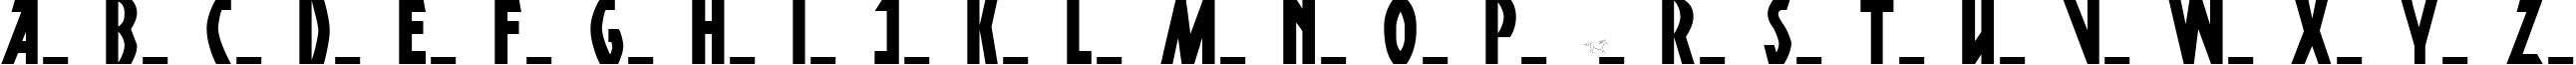 Пример написания английского алфавита шрифтом DSPosterPen